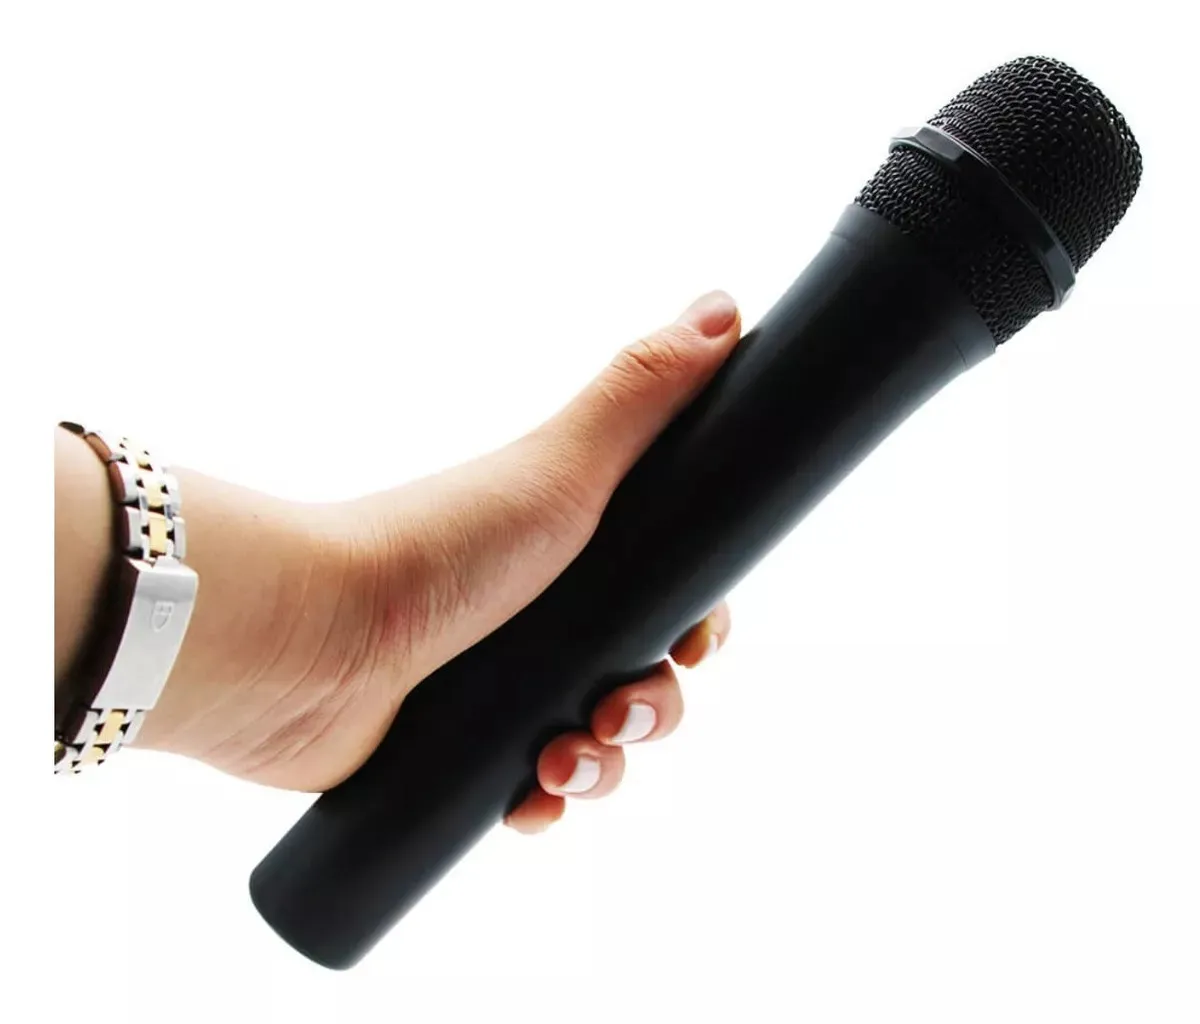 Microfono Inalambrico Profesional Con Receptor